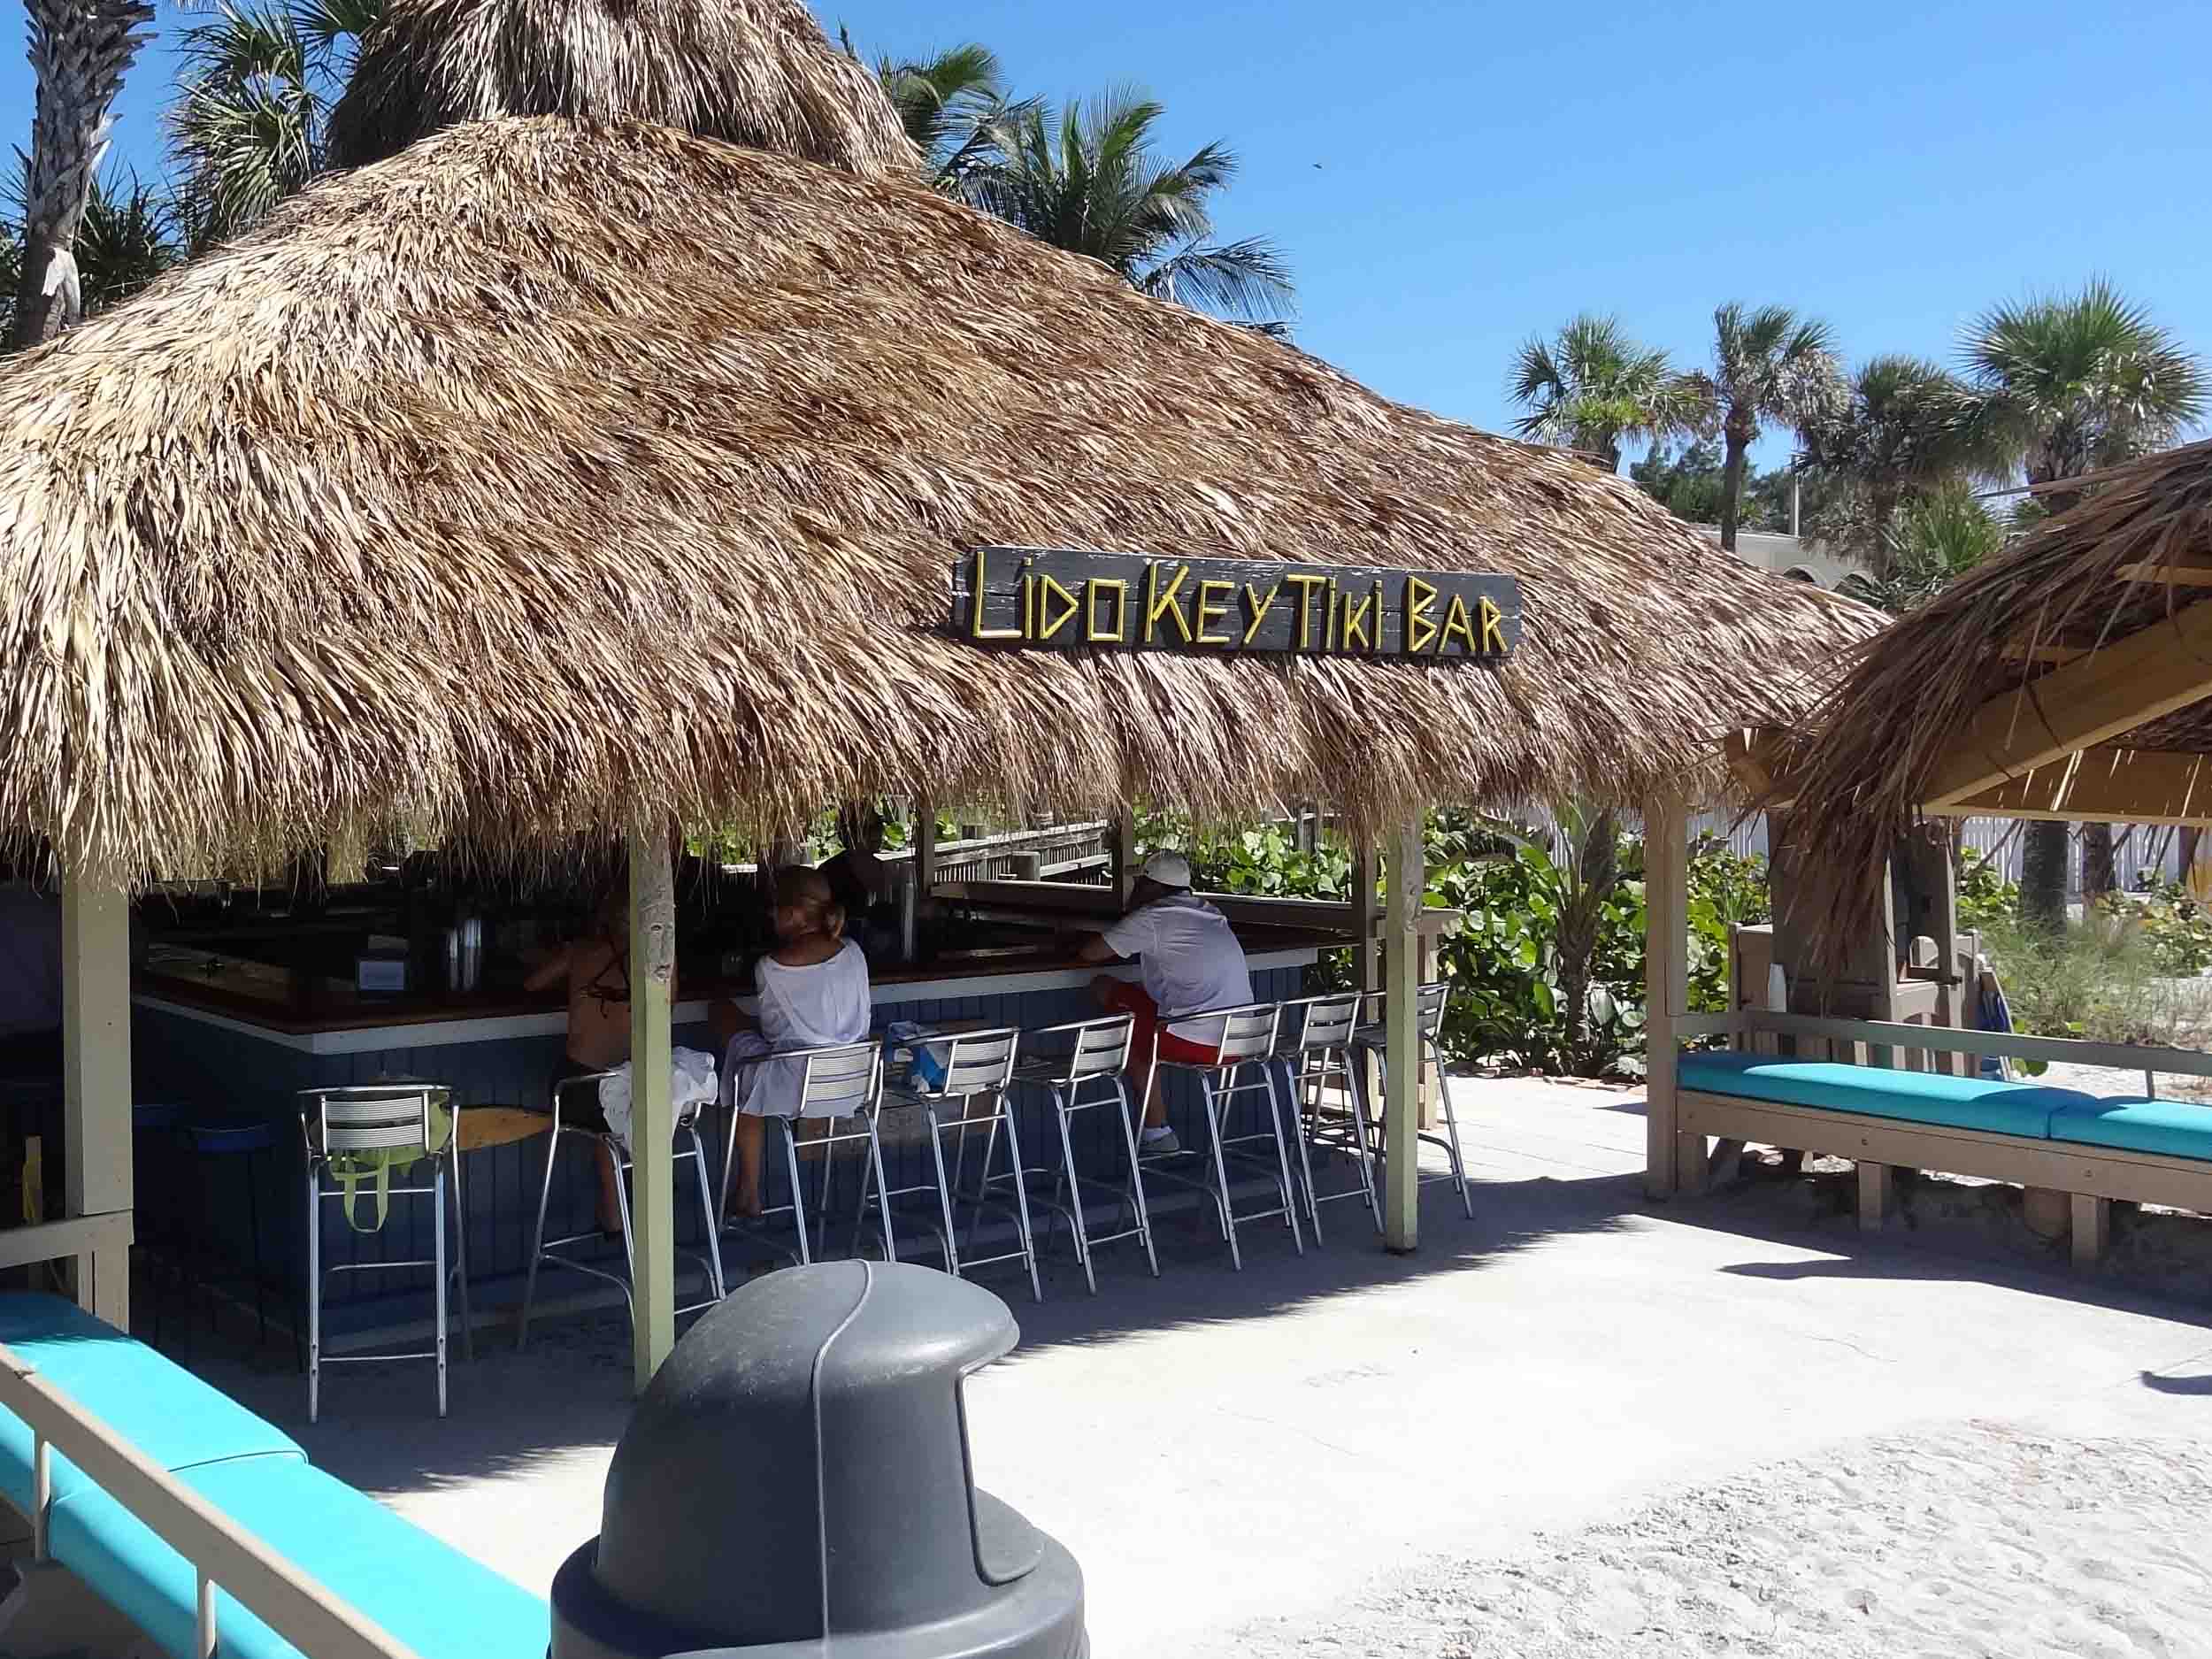 Lido Key Tiki Bar At The Ritz Carlton Beach Club Florida Beach Bar